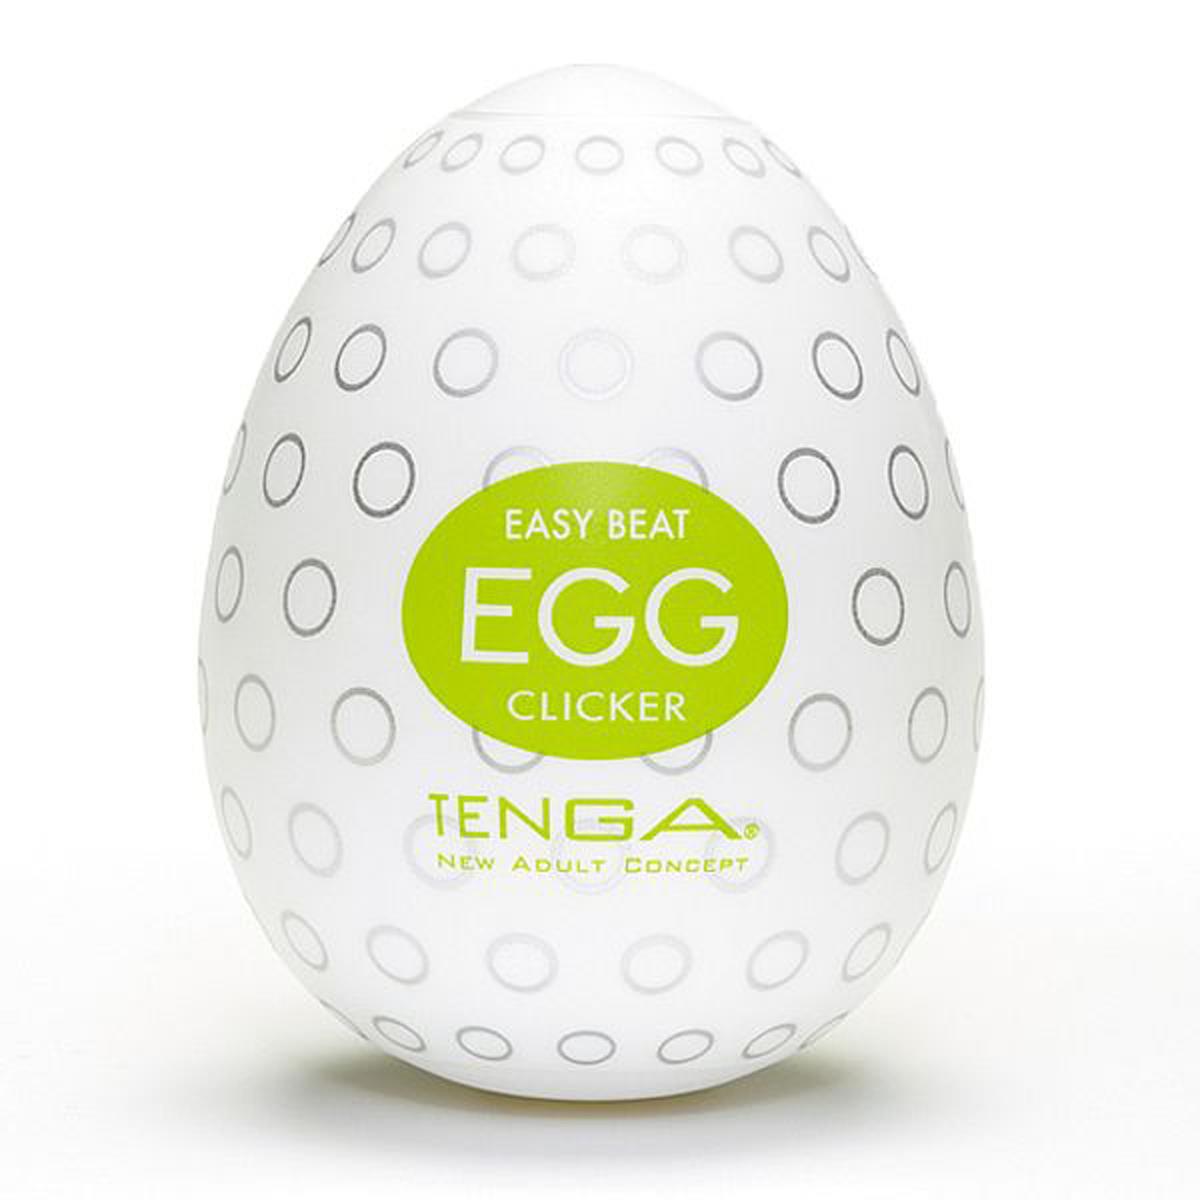 Easy Beat One-Cap Egg Clicker Tenga Miess